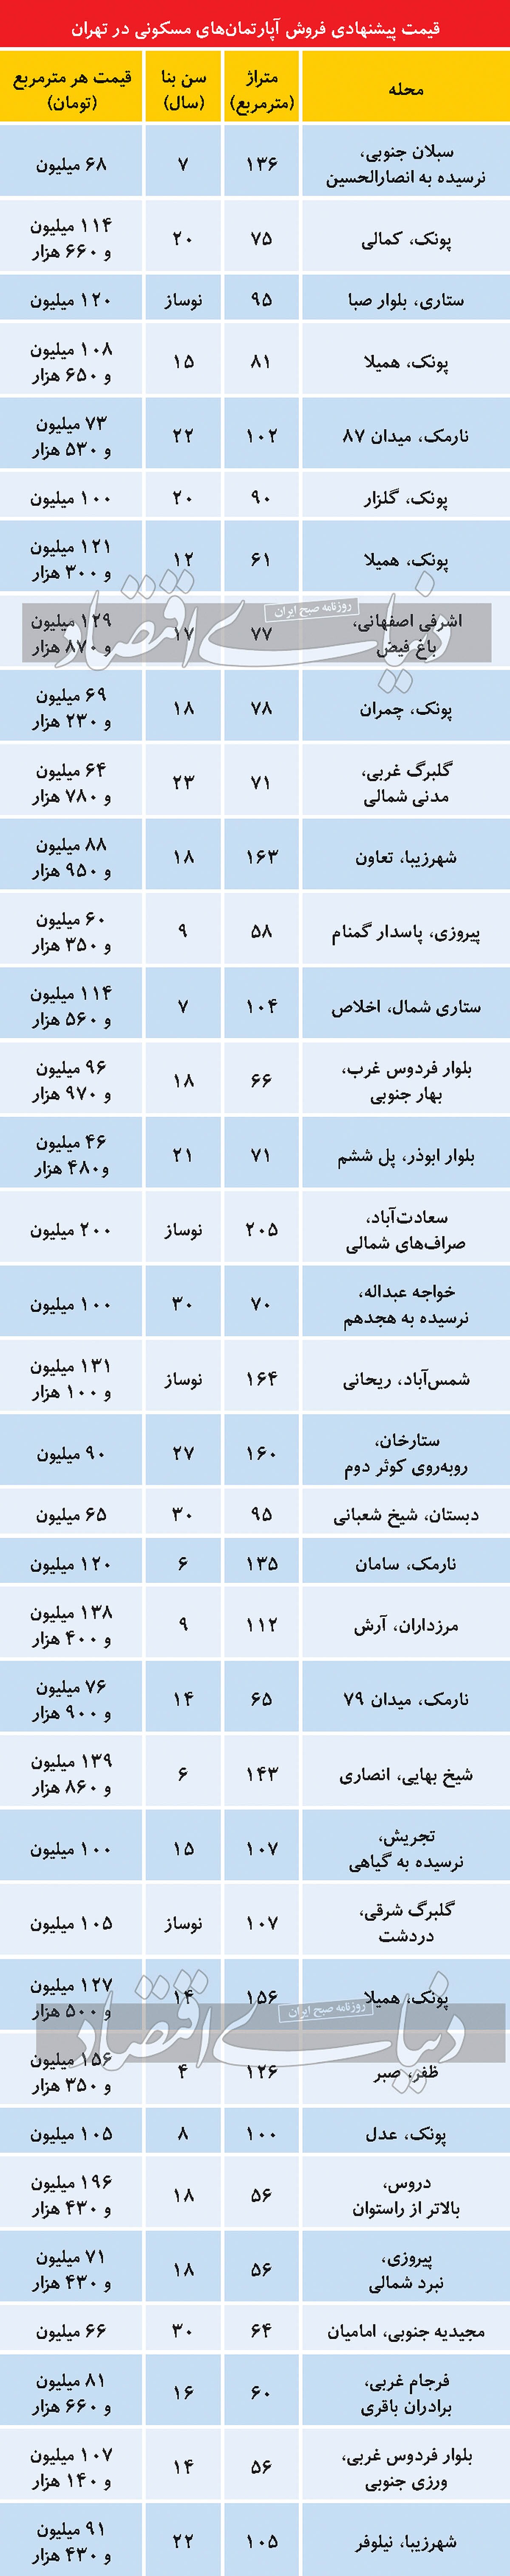 قیمت فروش آپارتمان های مسکونی در تهران/ جدول